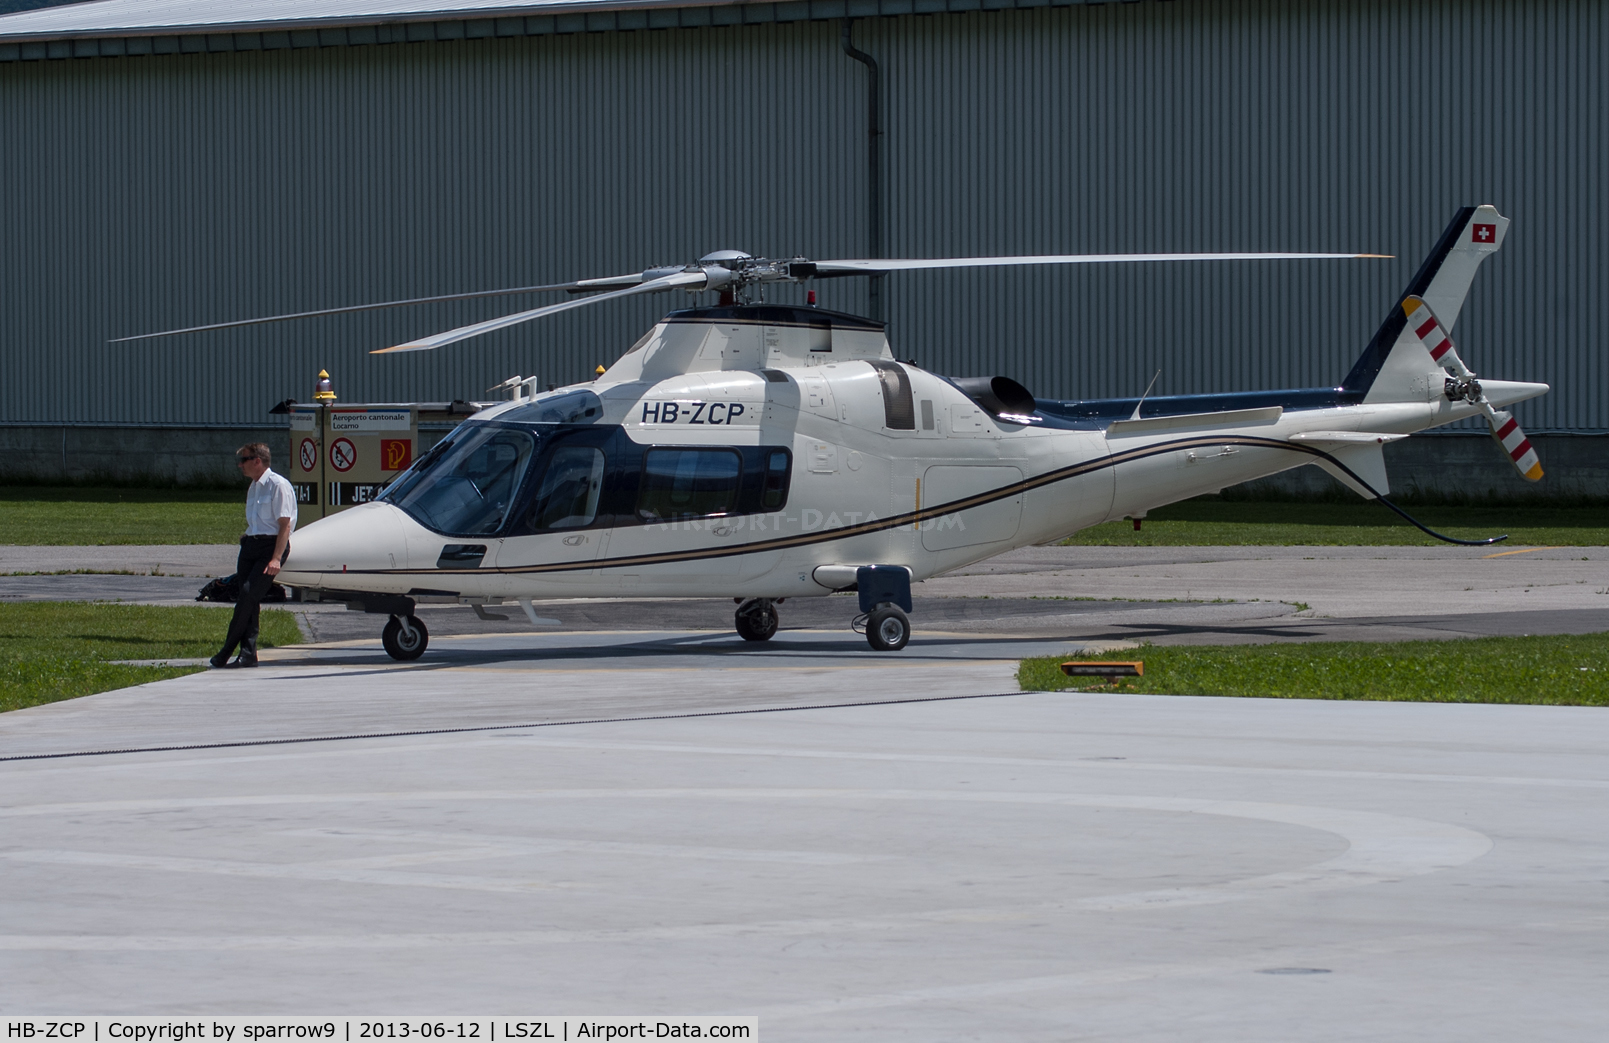 HB-ZCP, 2000 Agusta A-109E Power C/N 11075, At Locarno-Magadino airfield, civil part